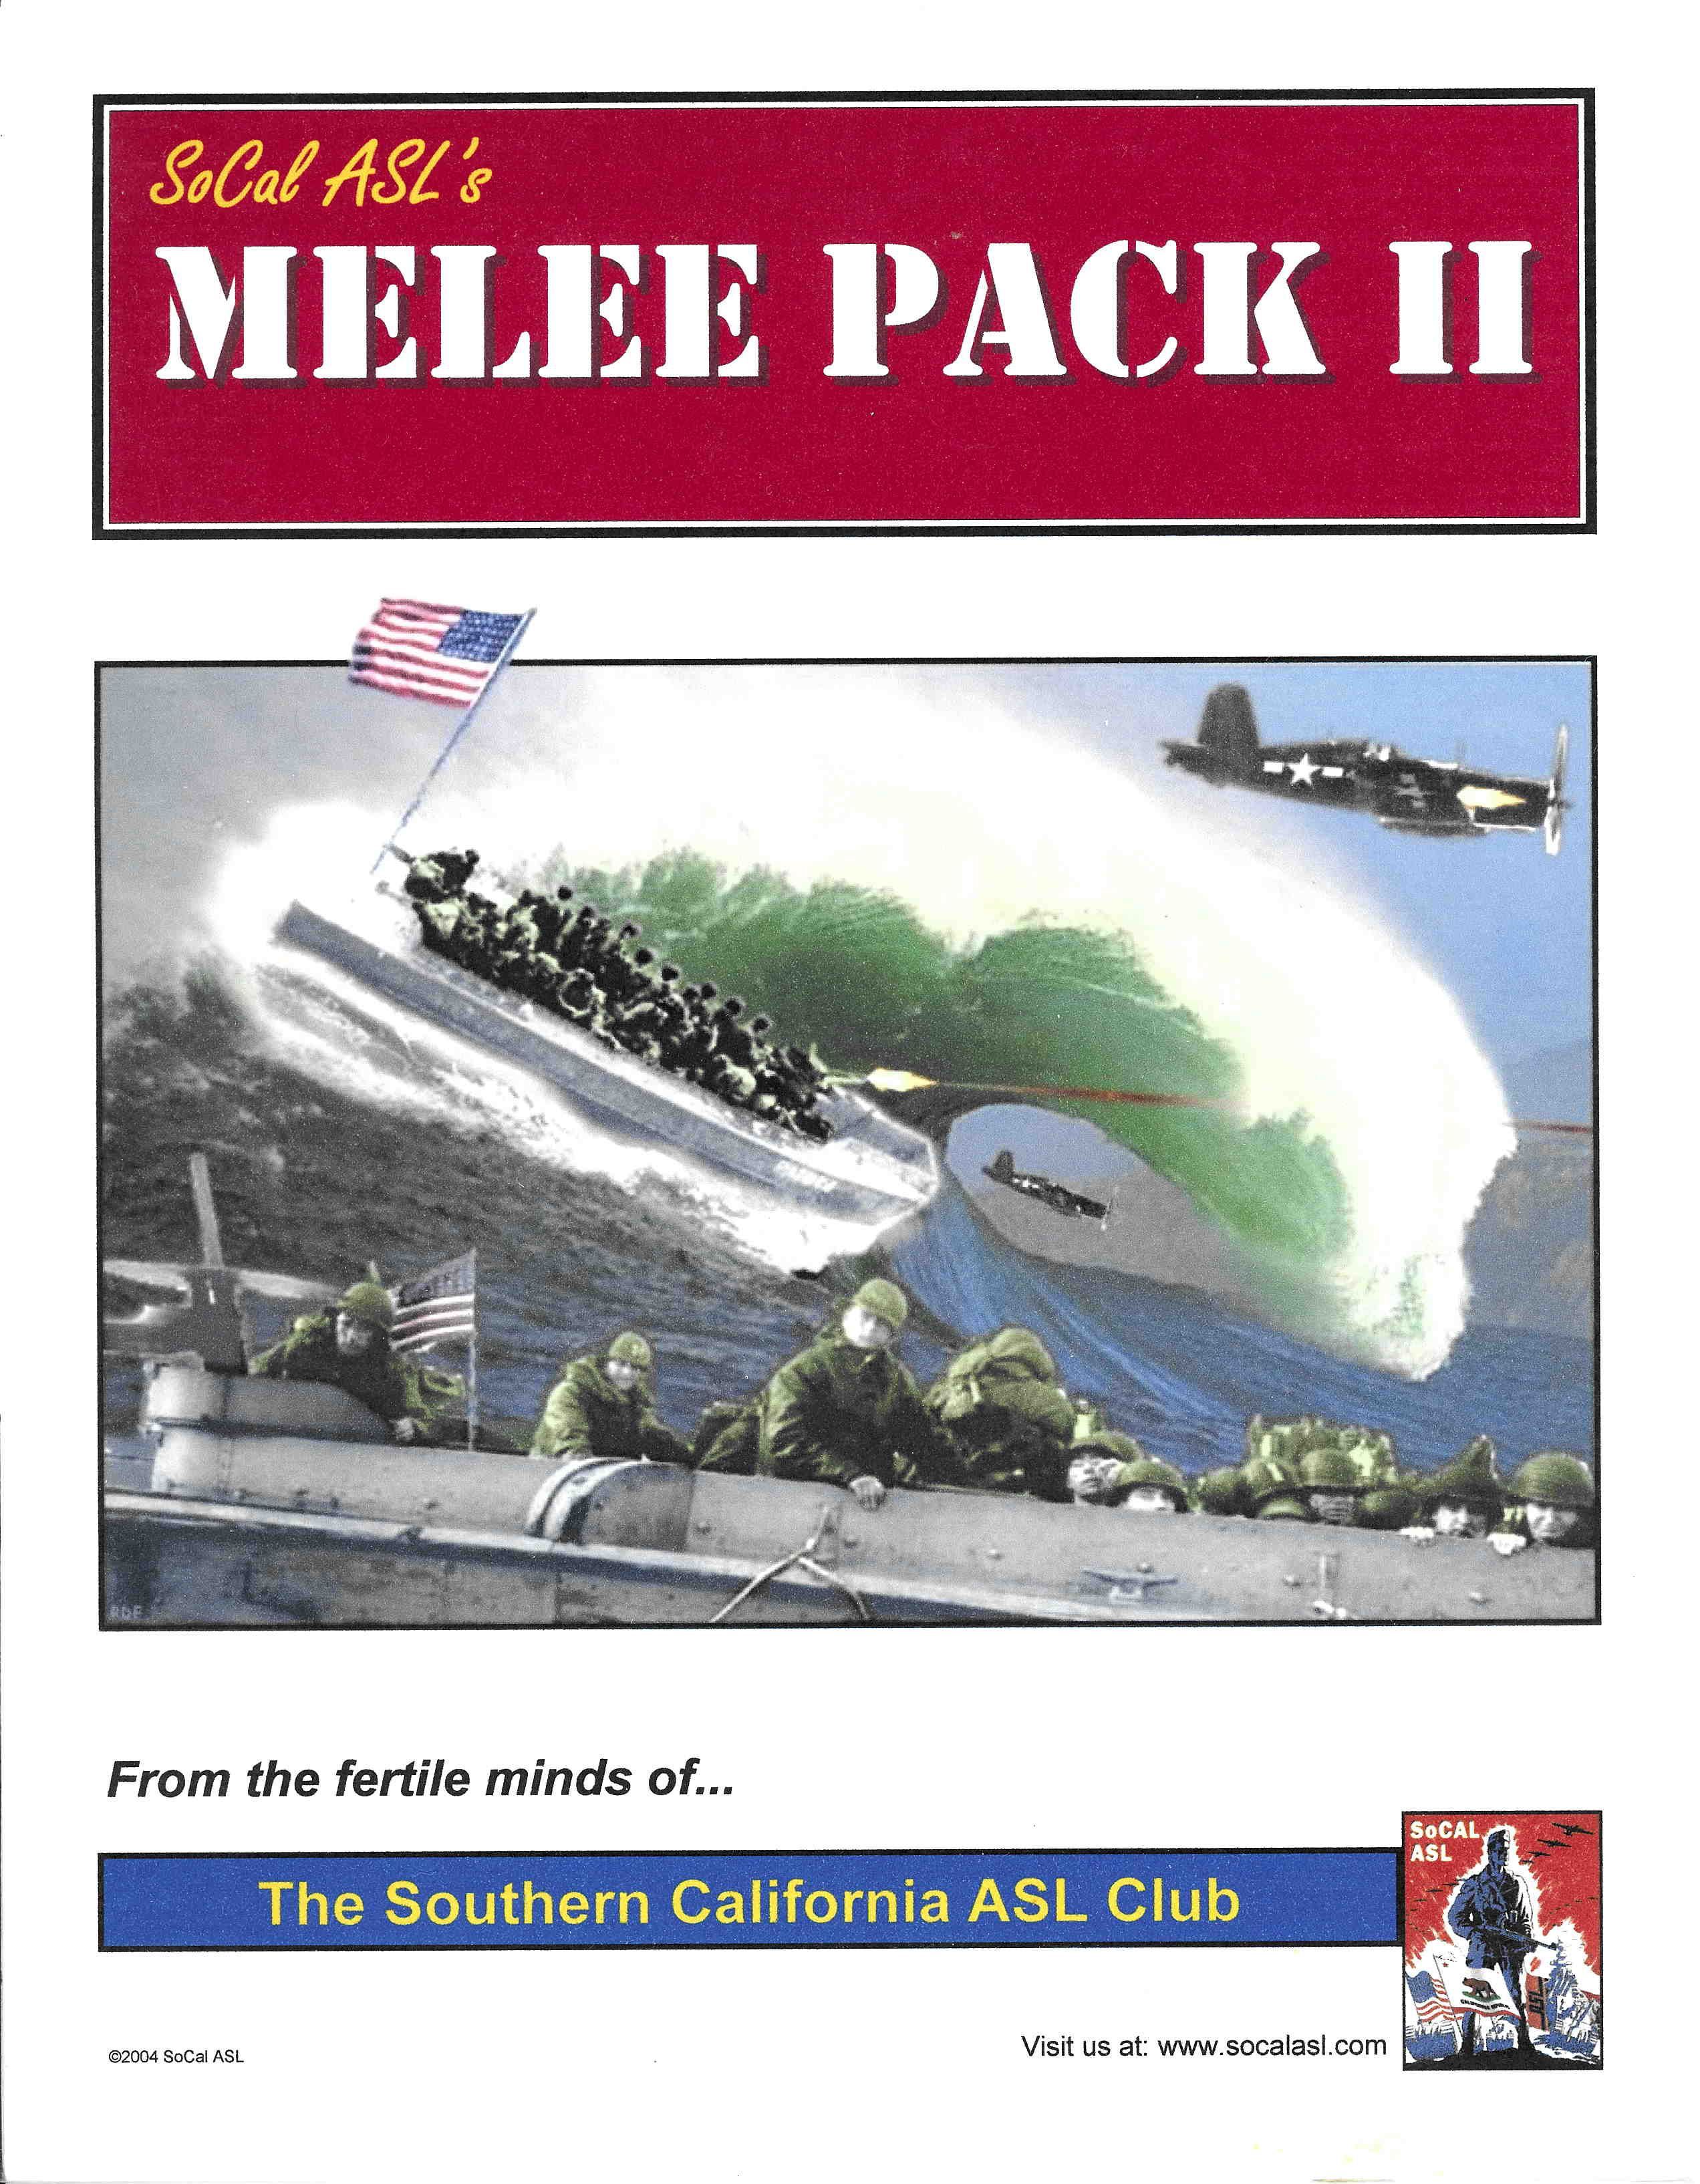 Melee Pack II